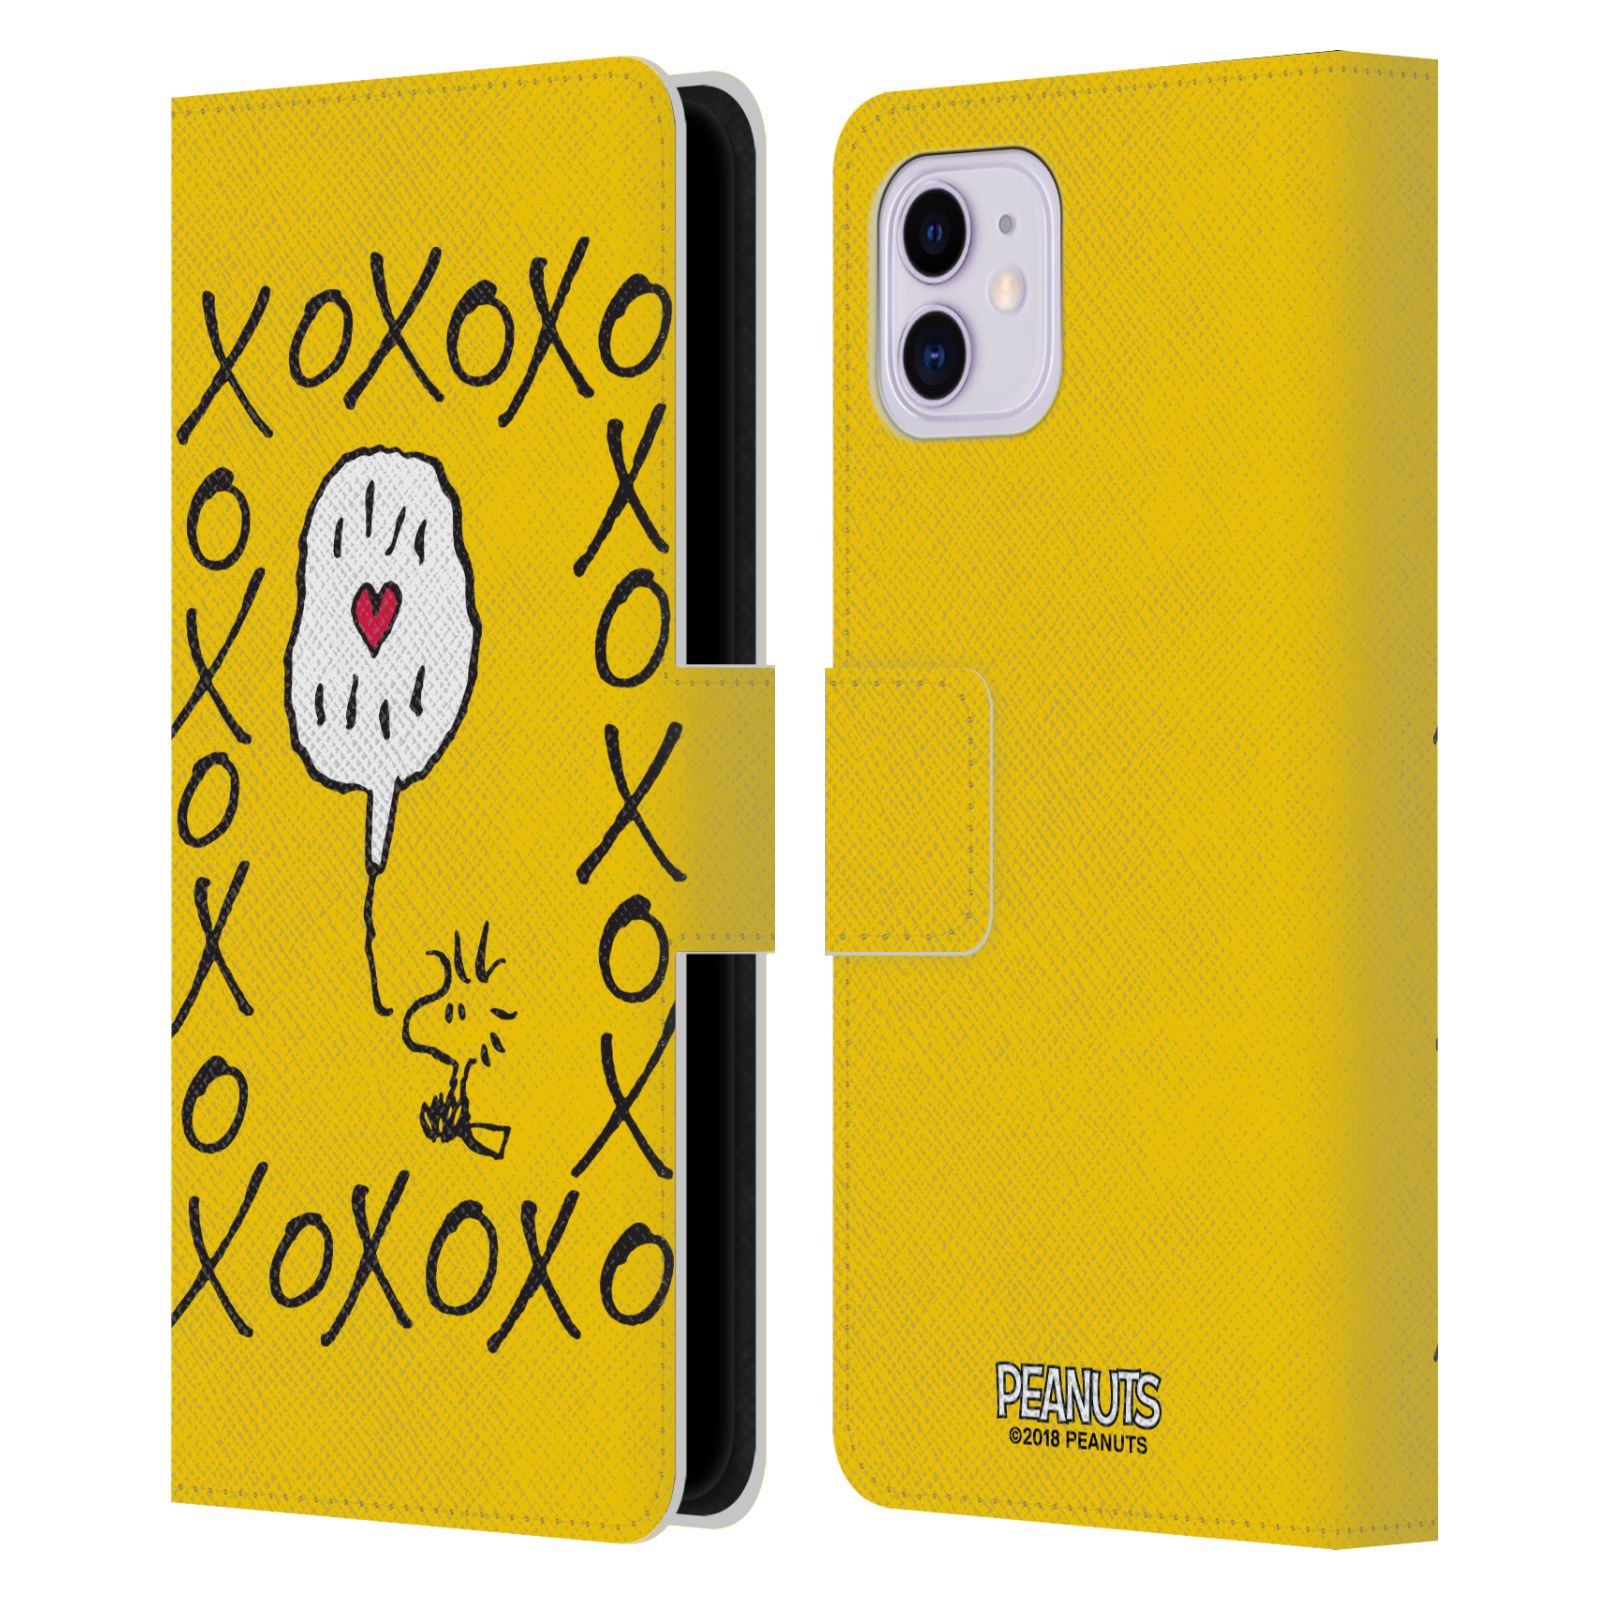 Pouzdro na mobil Apple Iphone 11 - Head Case - Peanuts - Woodstock ptáček XOXO